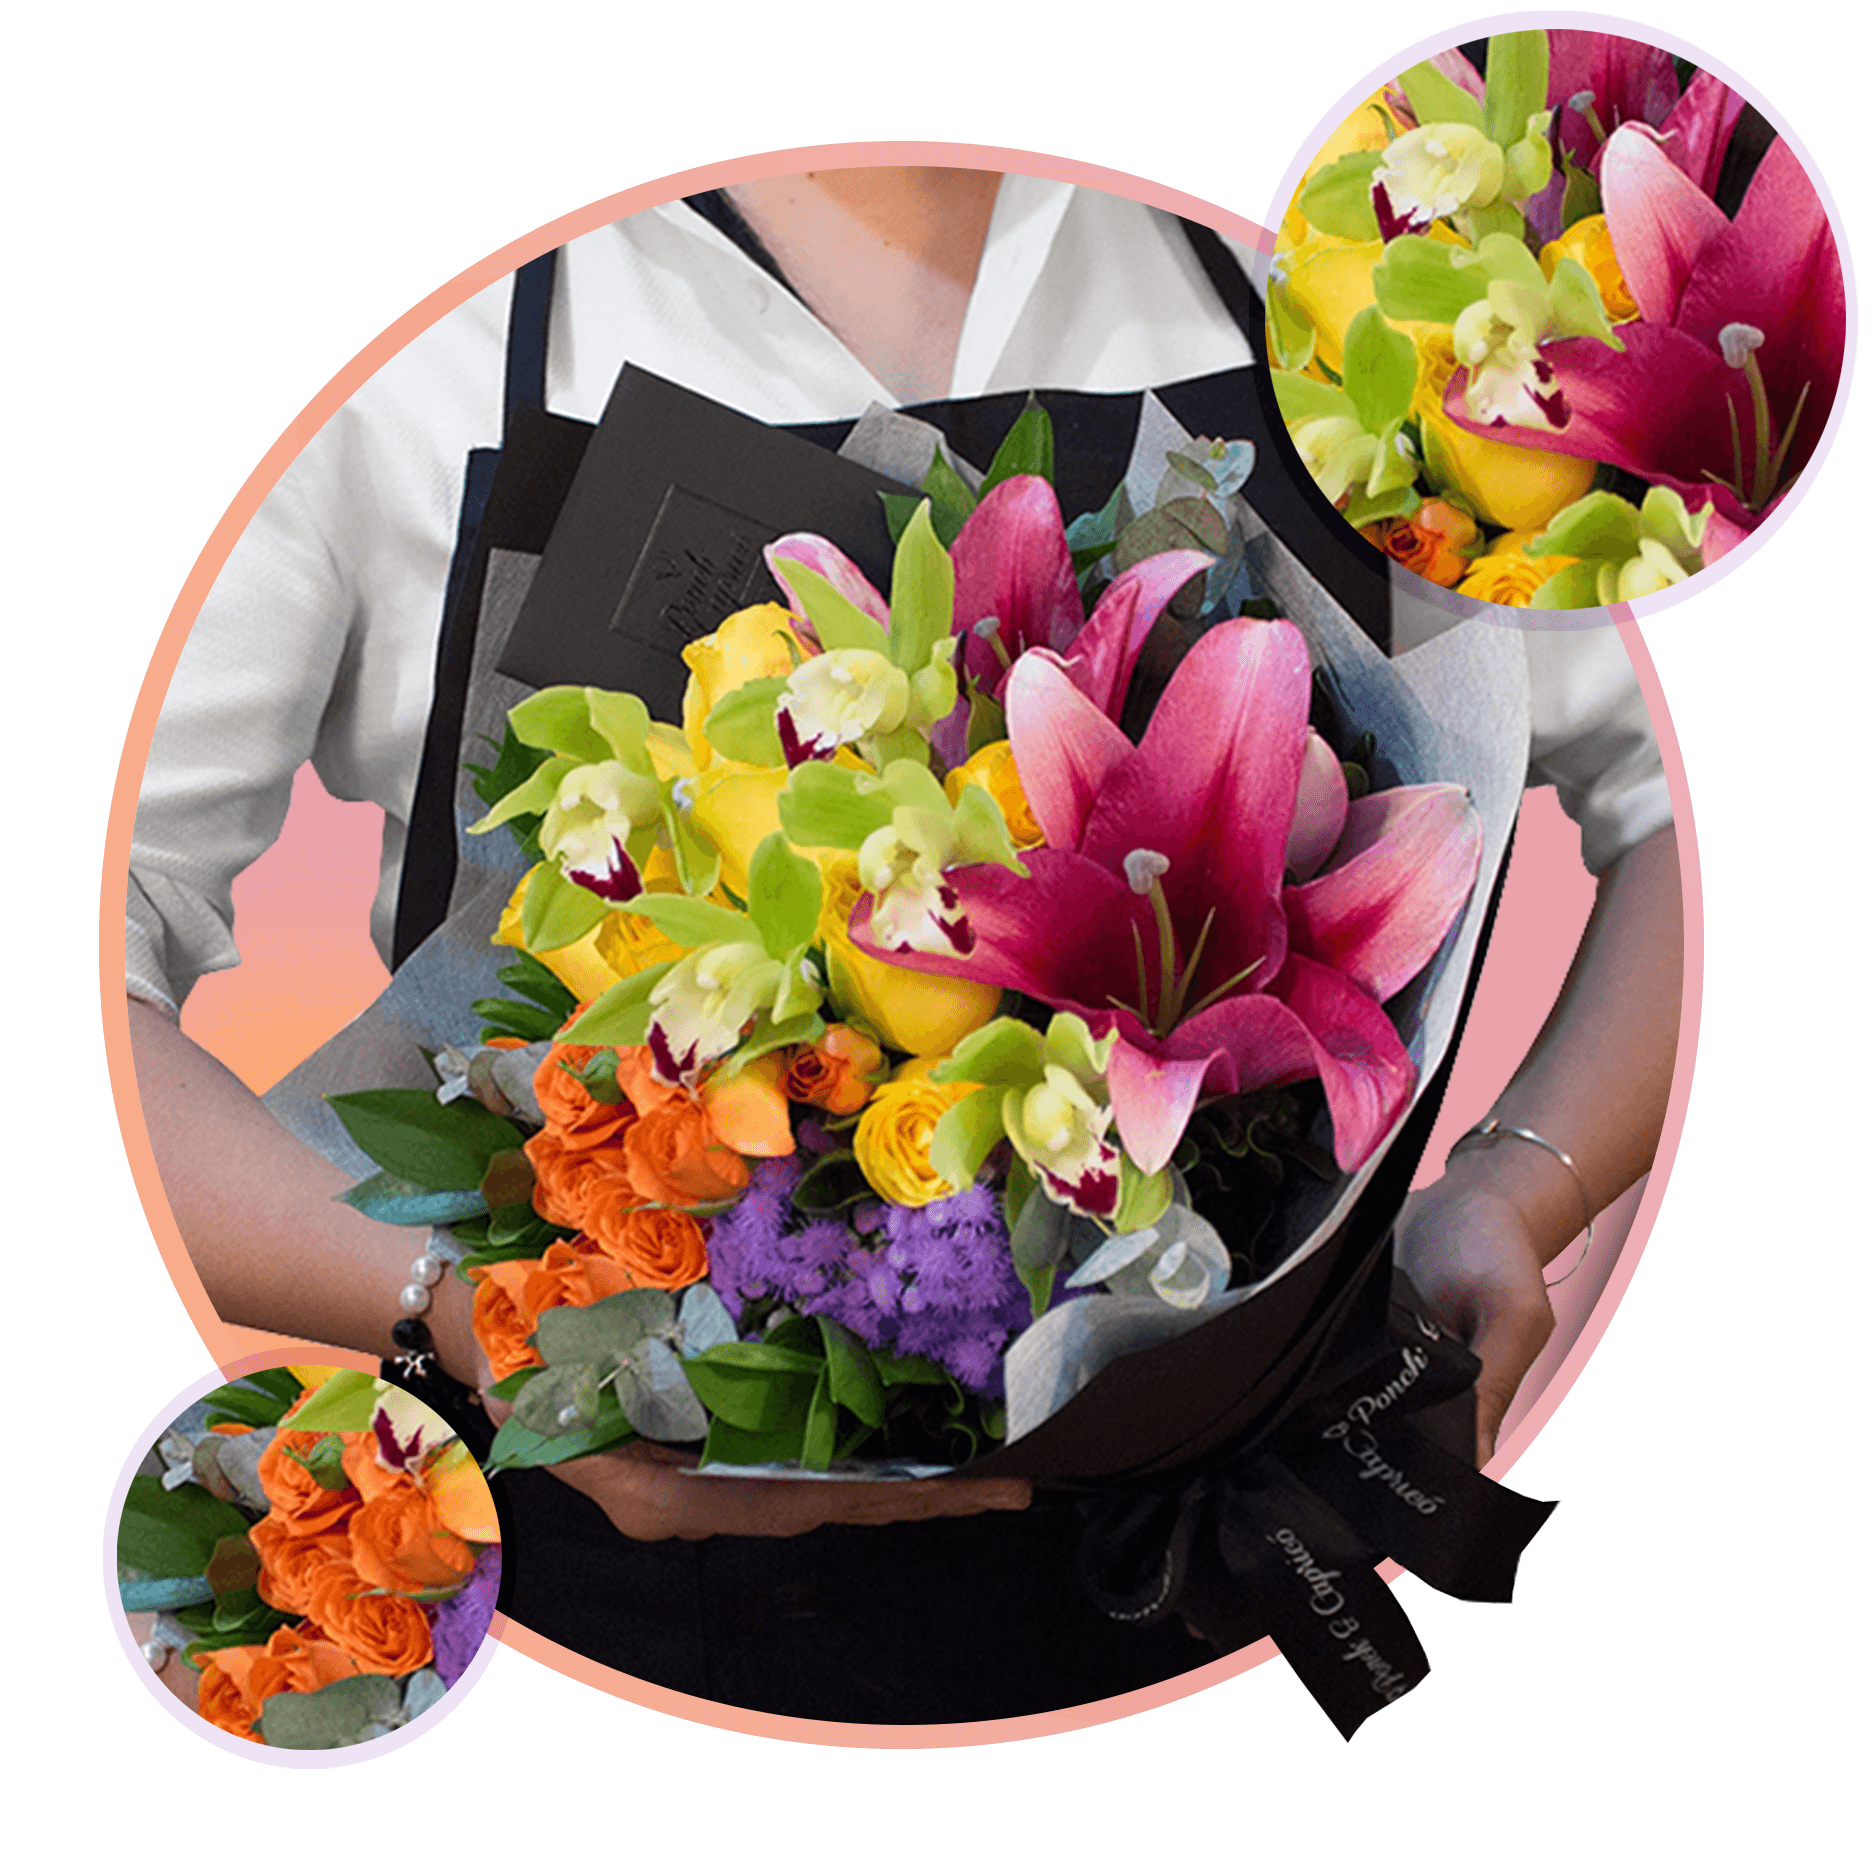 Bouquet Orquideas, Concador Rubi, Rosas y Mini Rosas. Flores a Domicilio CDMX Ponch y Caprico